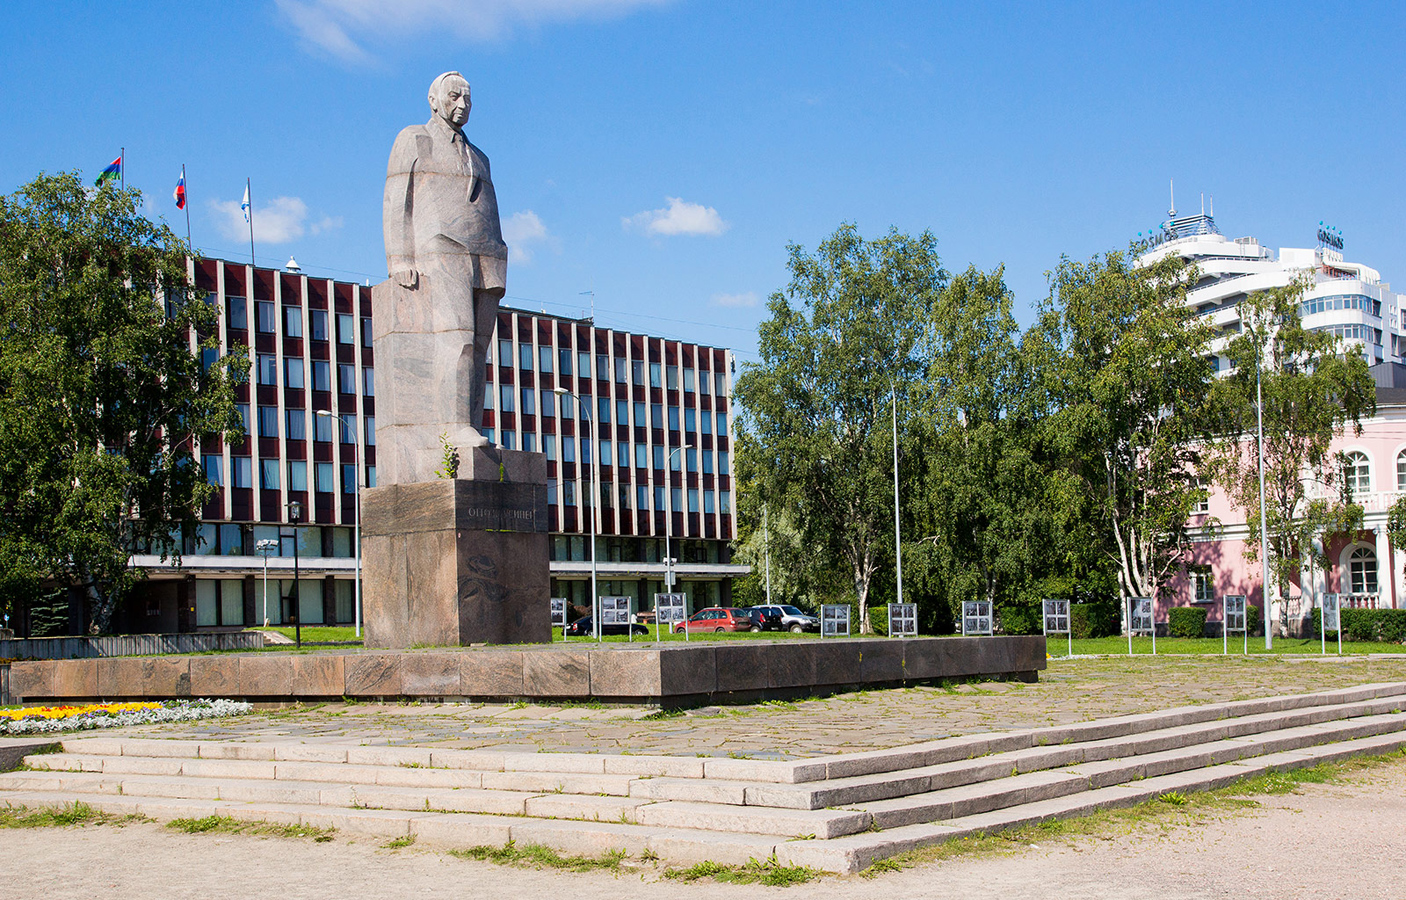 2019. Monument to Kuusinen in Petrozavodsk